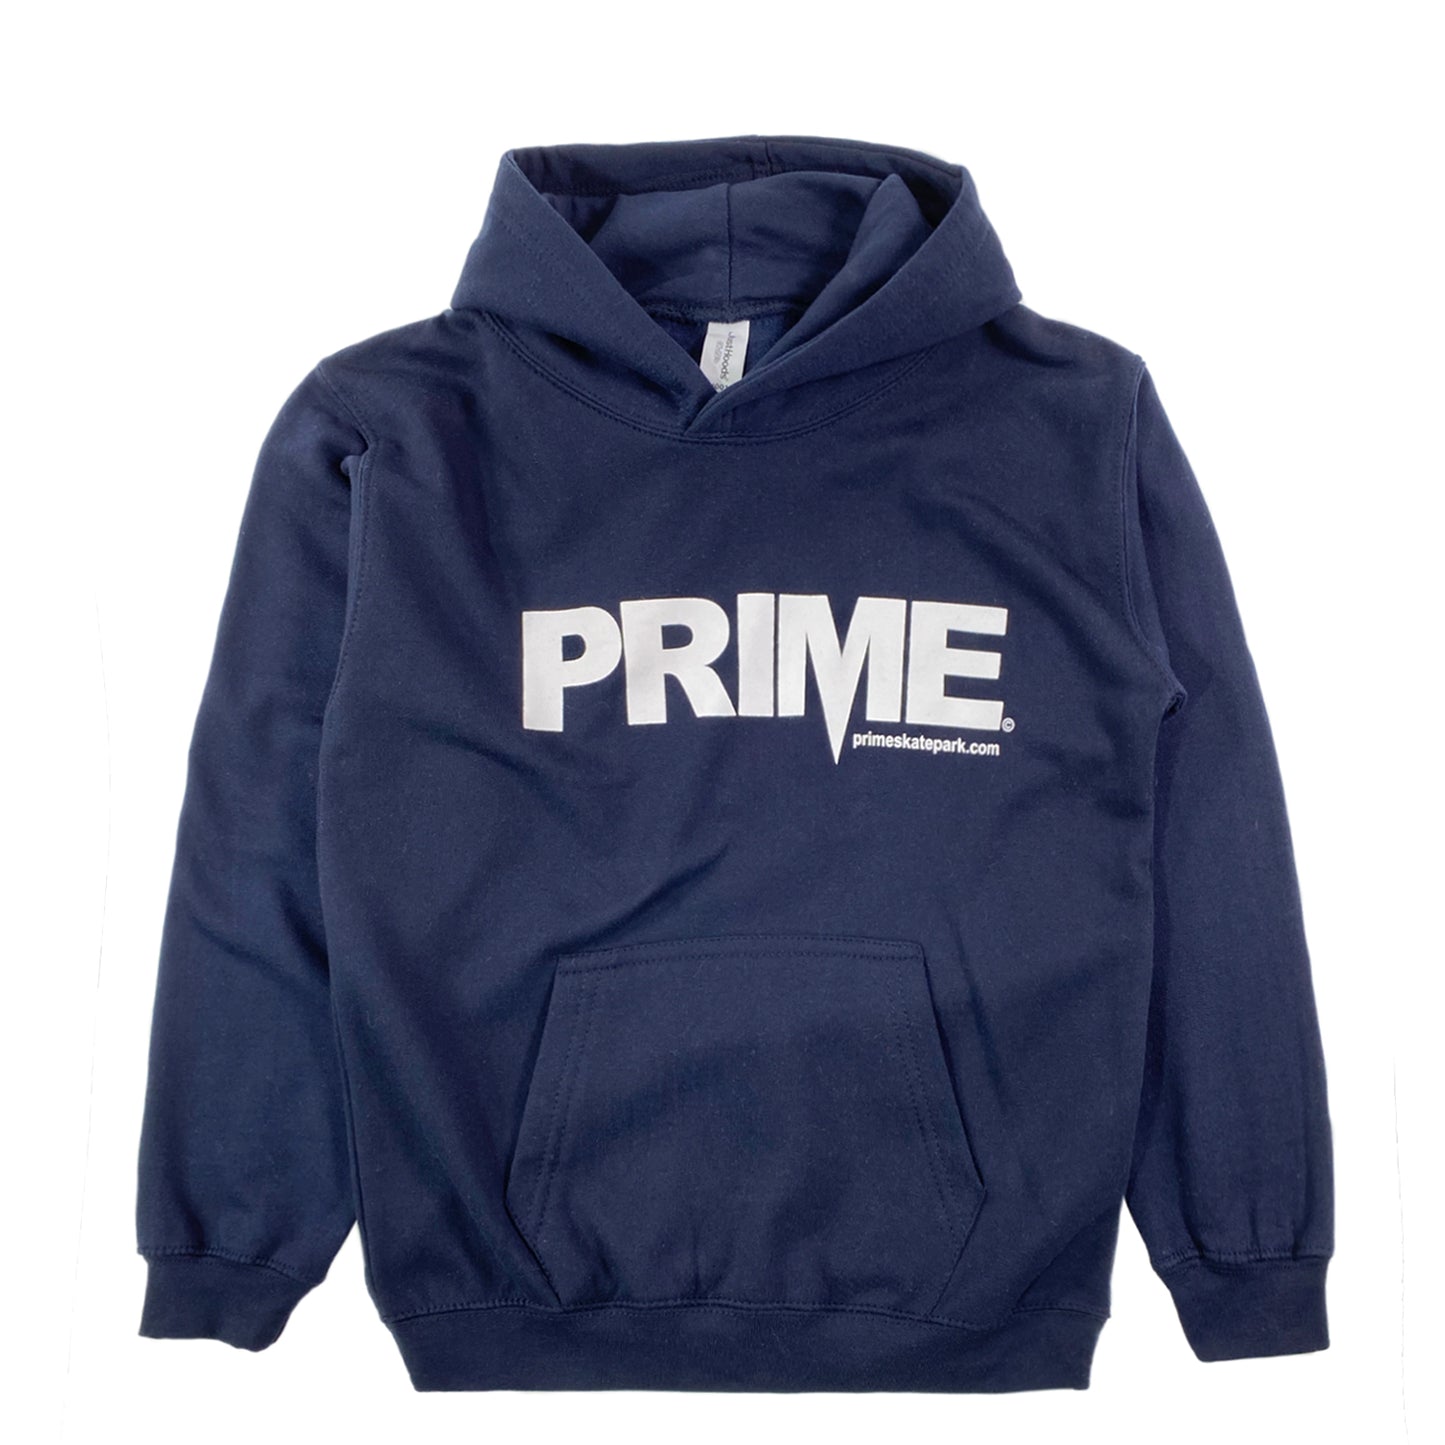 Prime Delux OG Logo Kids Hooded Sweat - Navy / White - Prime Delux Store